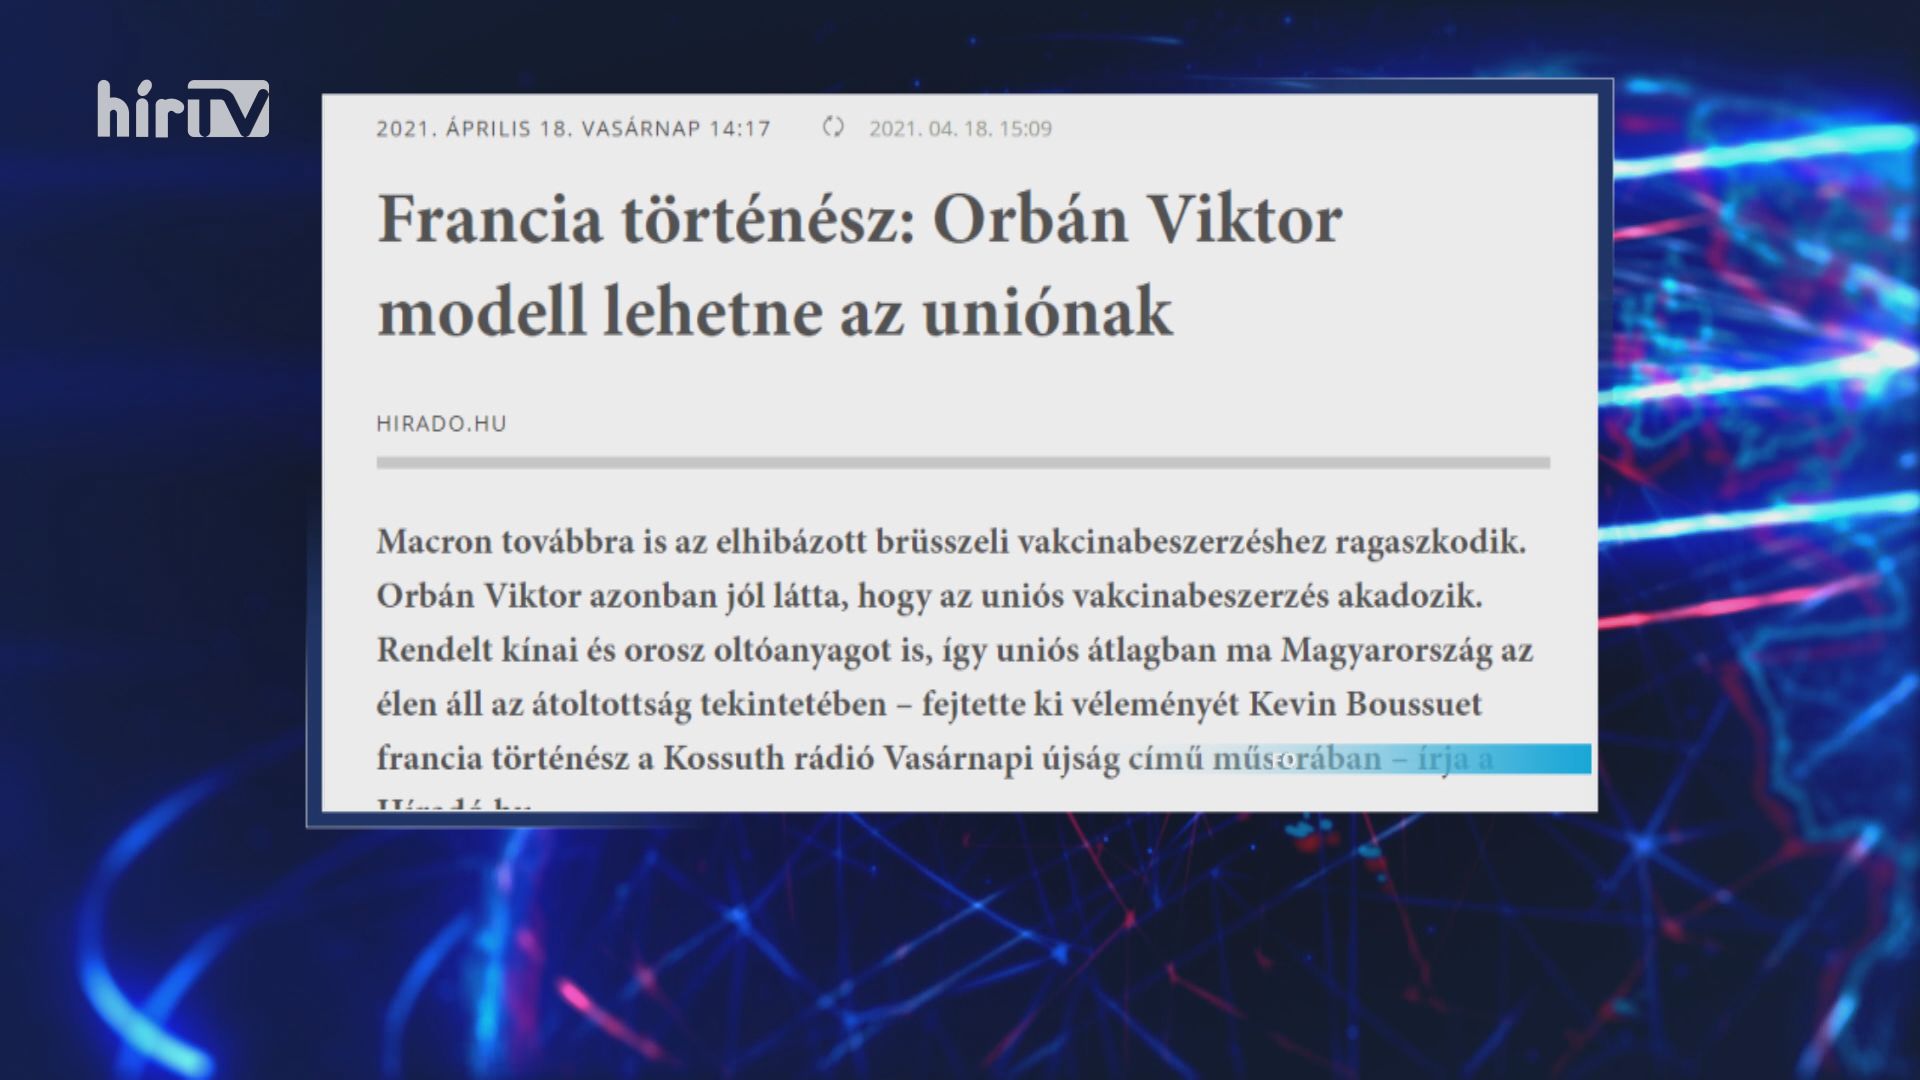 Orbán Viktor példaként szolgálhatna az Európai Uniónak